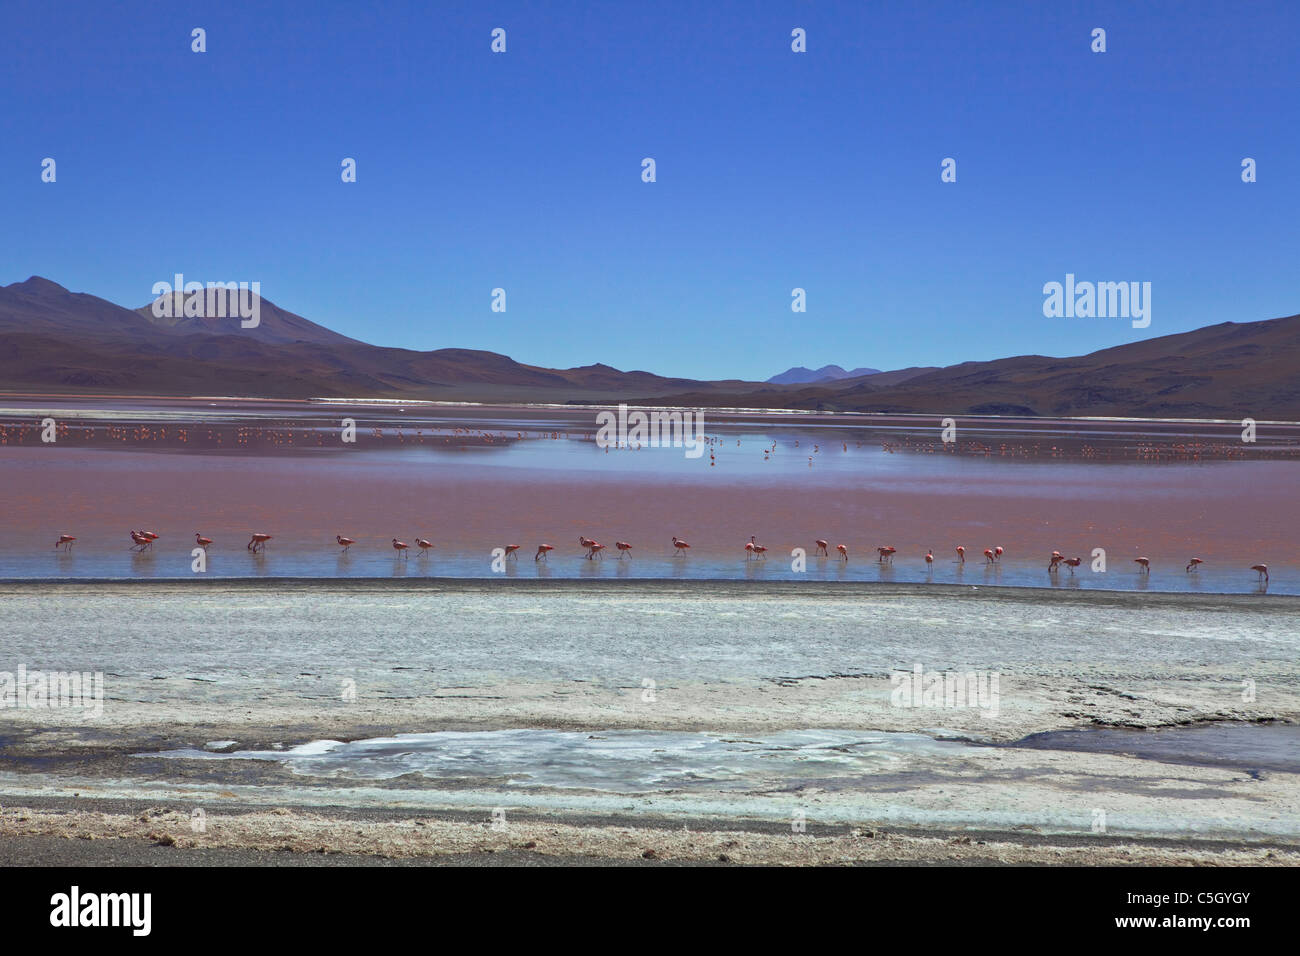 Los flamencos se alimentan en las algas ricas en aguas de la Laguna Colorada, Atacama, Altiplano, Sud Lipez, frontera de Chile, Bolivia, América del Sur Foto de stock